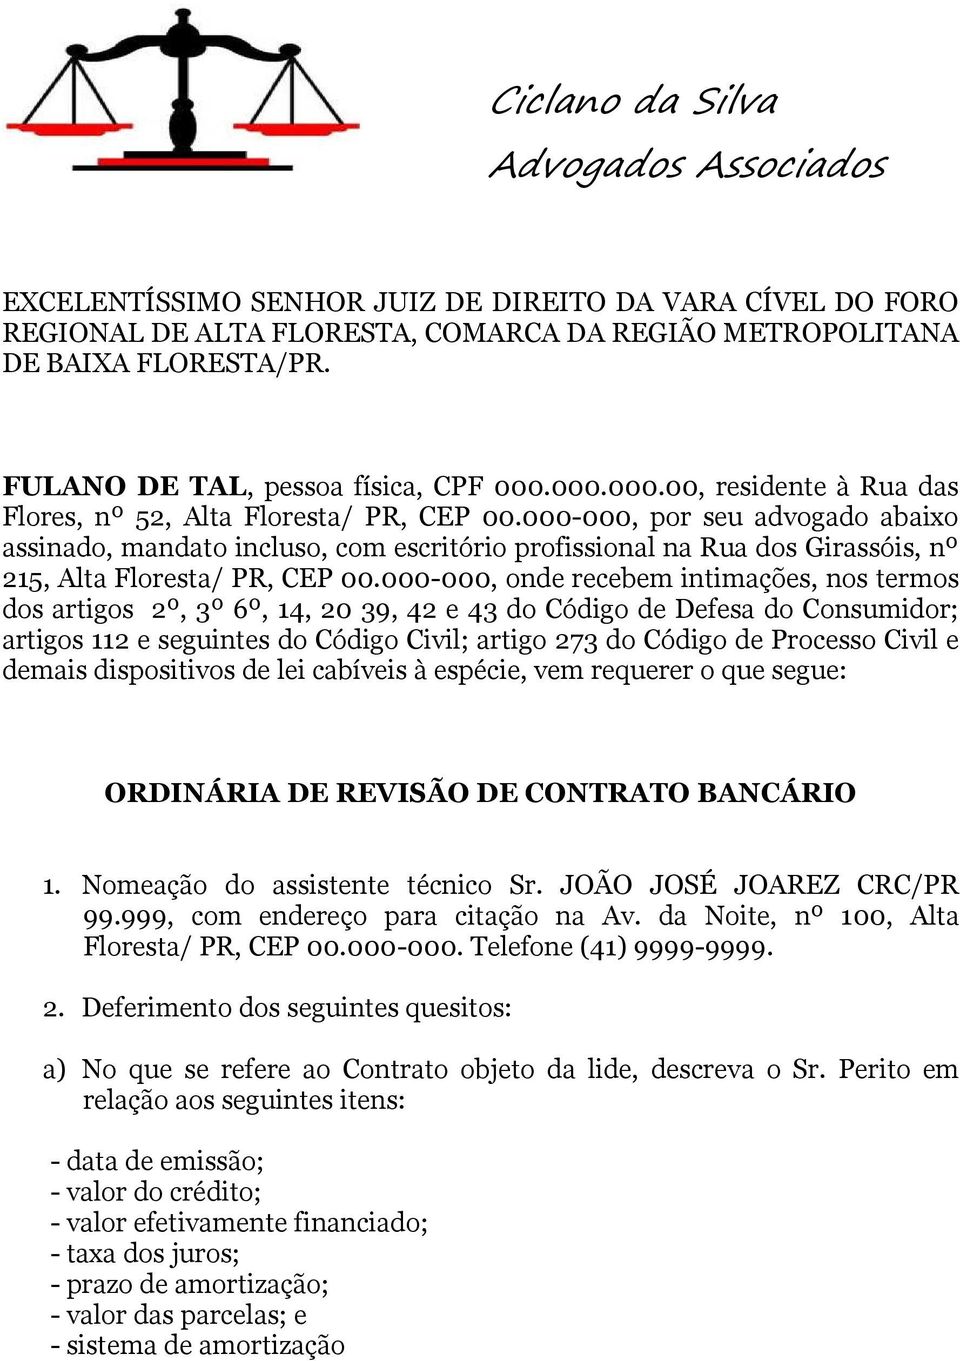 000-000, por seu advogado abaixo assinado, mandato incluso, com escritório profissional na Rua dos Girassóis, nº 215, Alta Floresta/ PR, CEP 00.